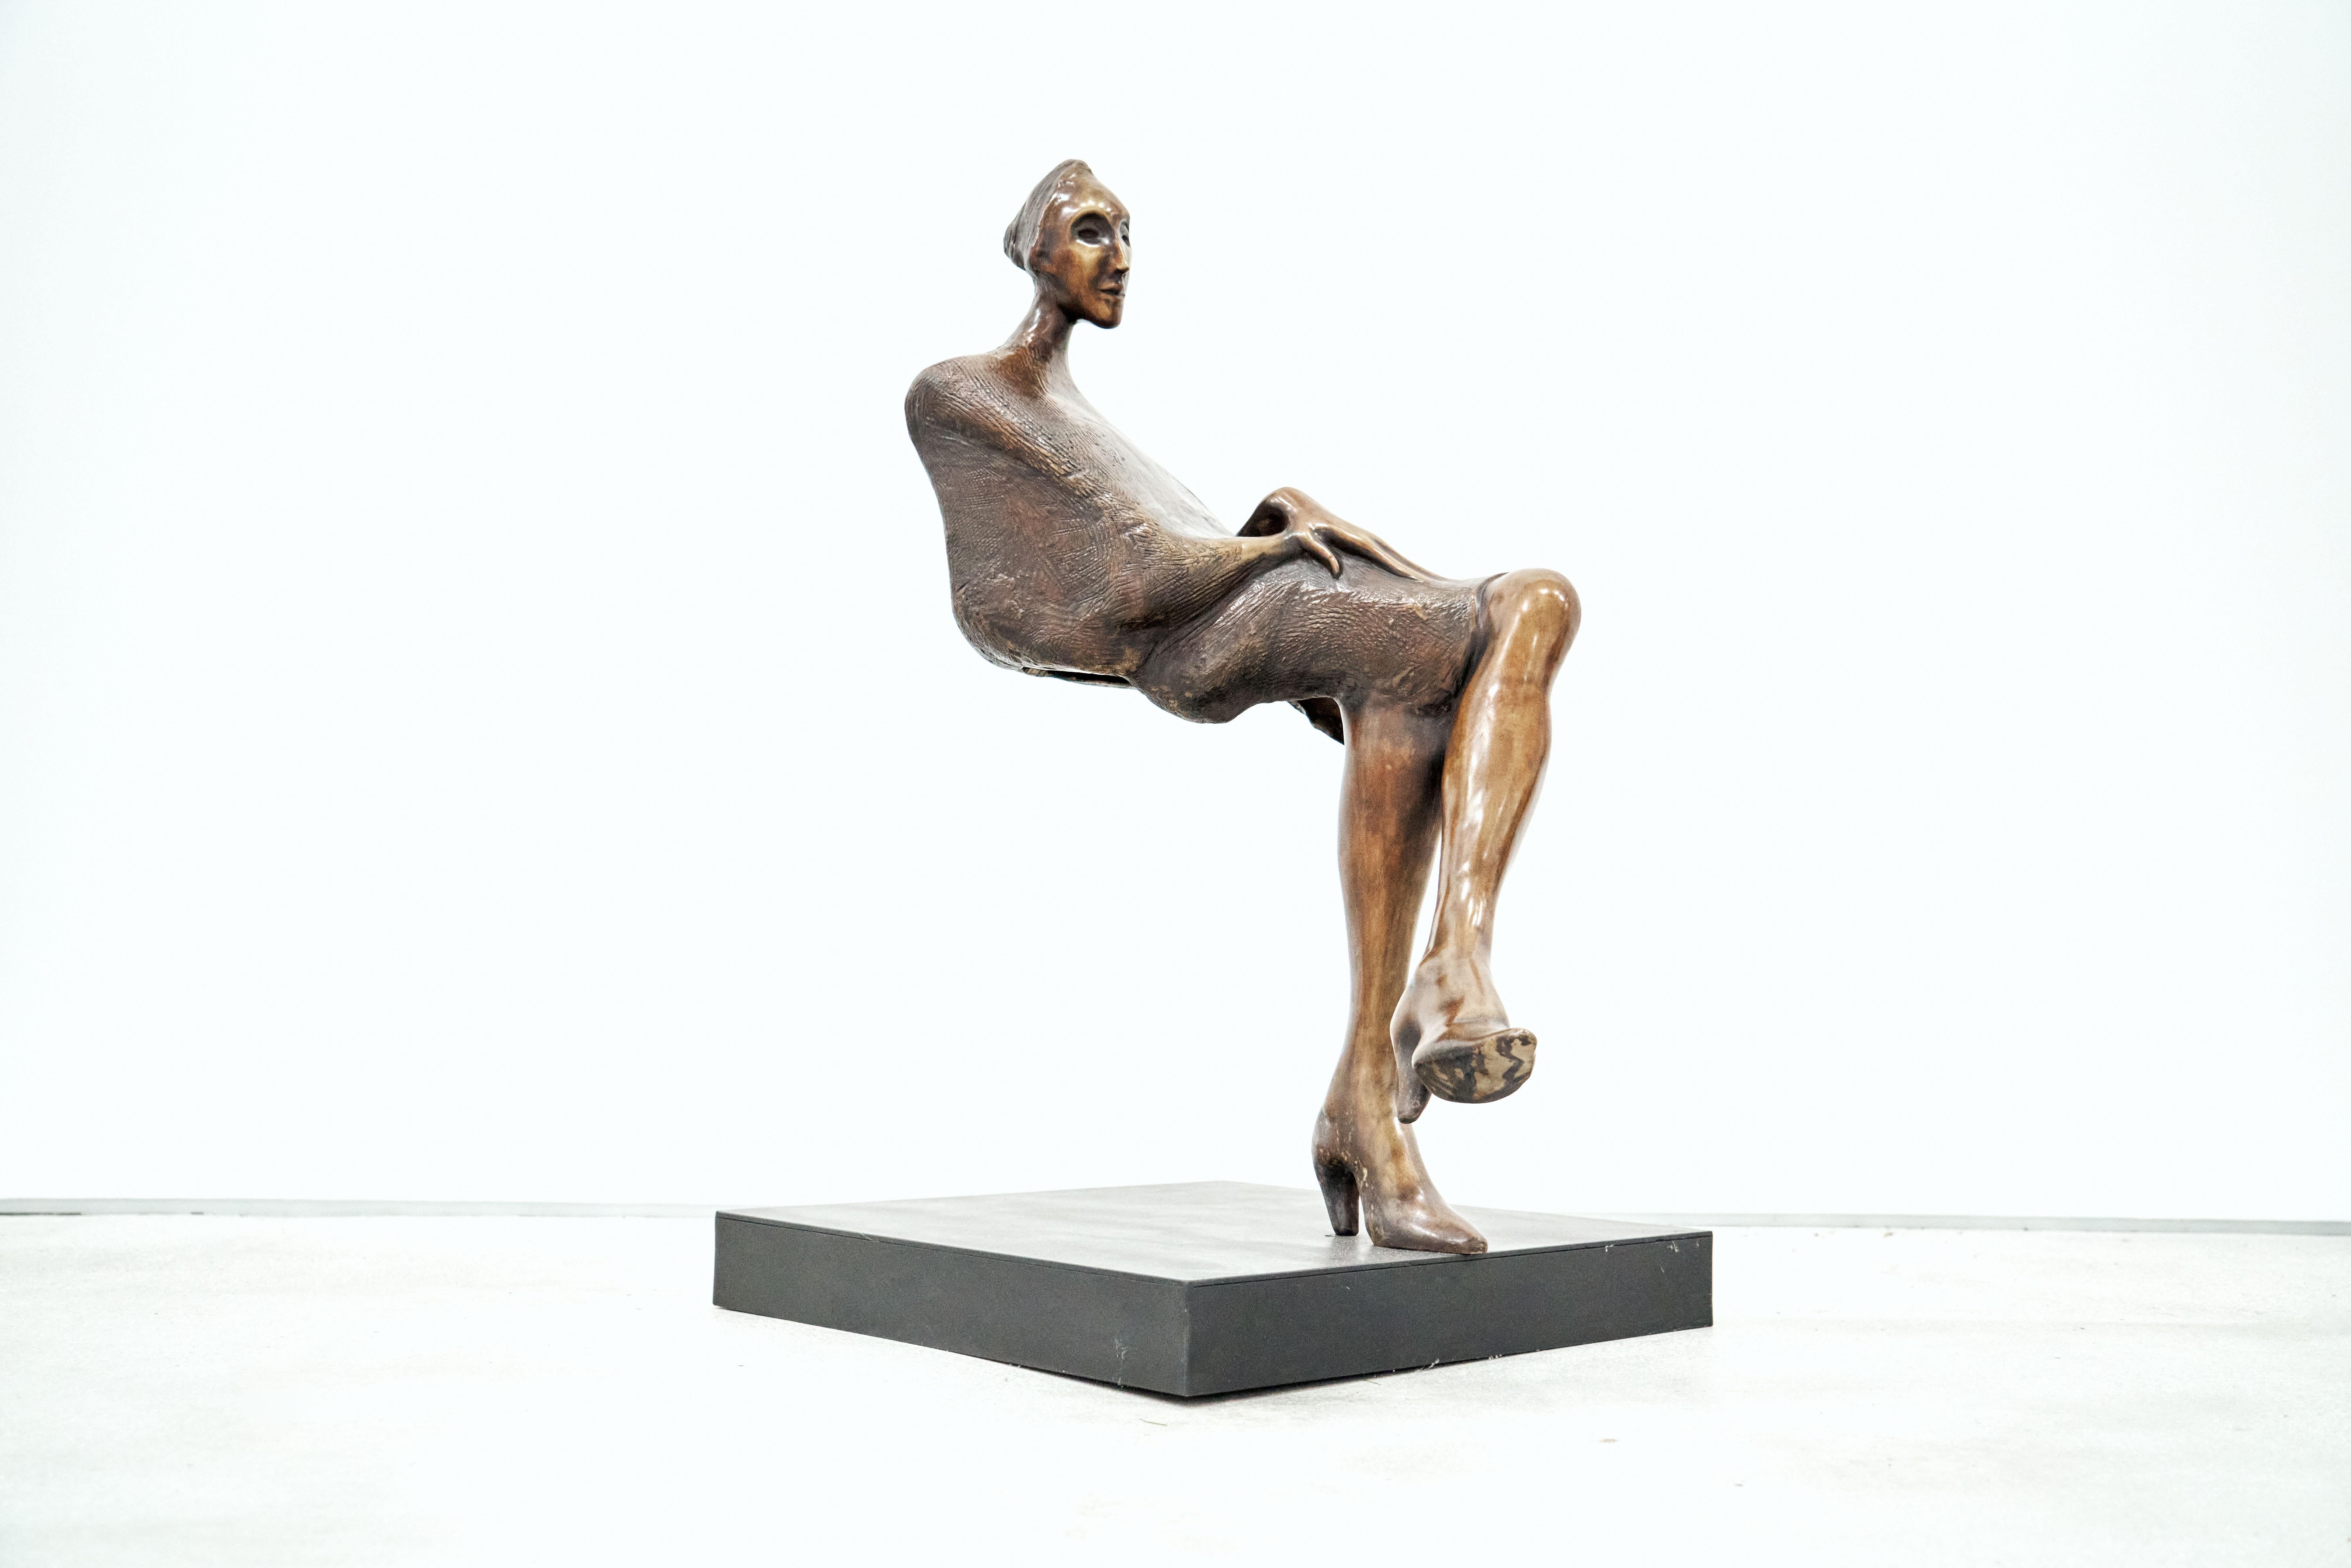  Jorge Segu,  Ilusion silla, 2000, bronze, édition de 7 exemplaires, 78 x 90 x 33 cm  - Sculpture de Jorge Seguí 